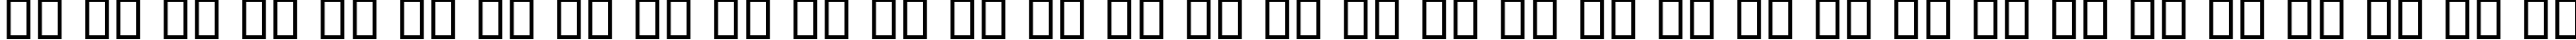 Пример написания русского алфавита шрифтом B Majid Shadow